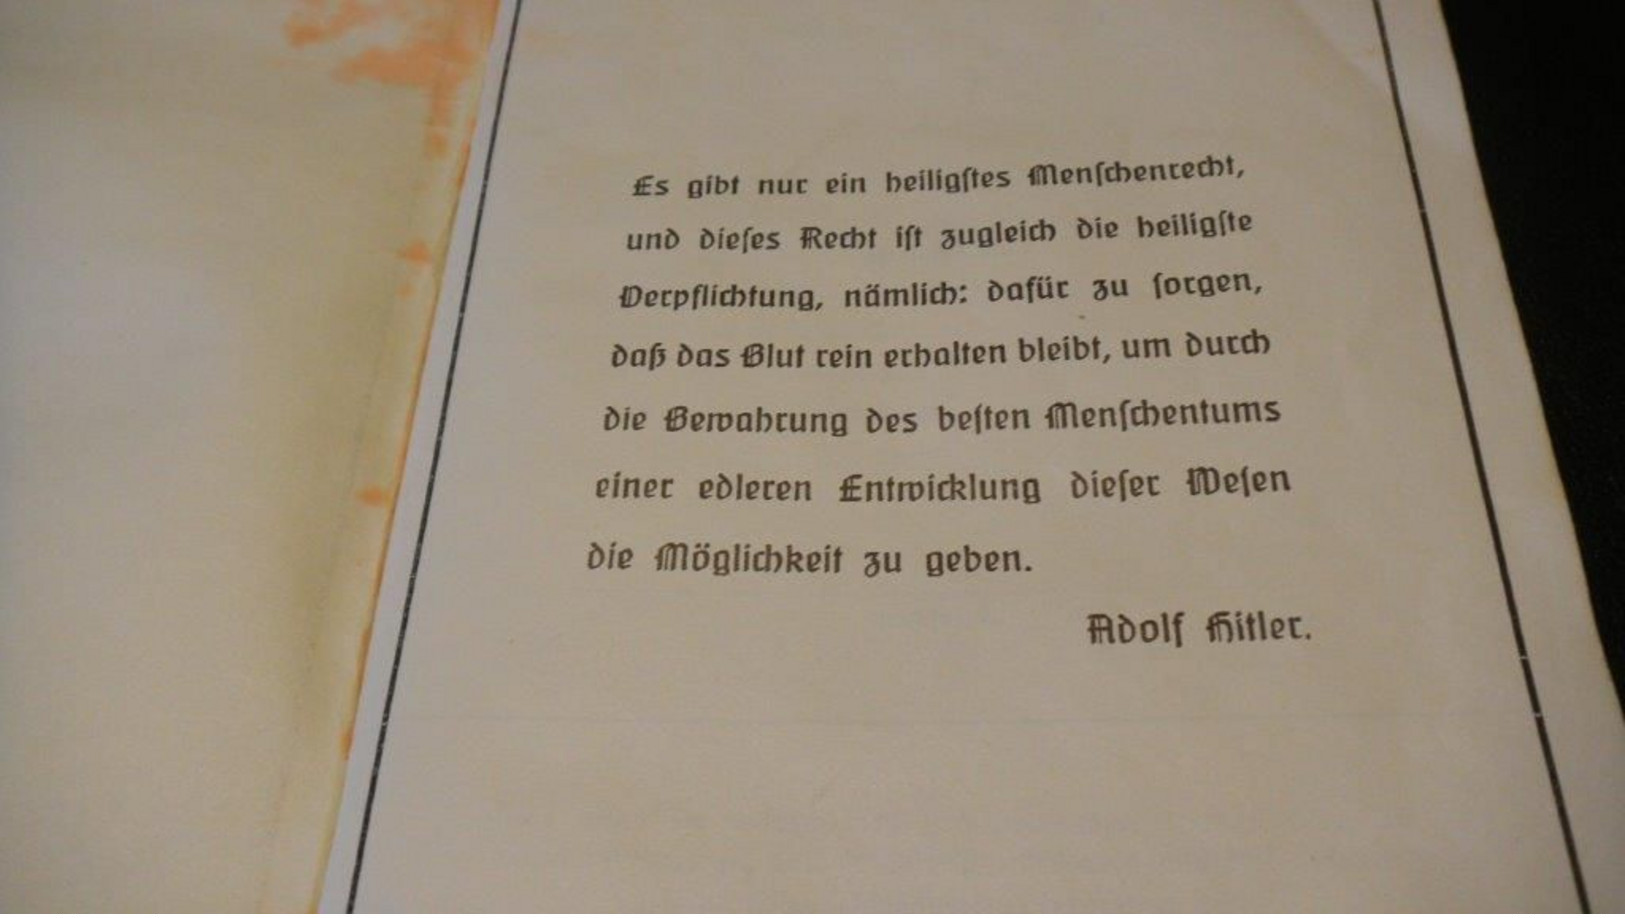 WW2 German Ahnenpass - Documentos